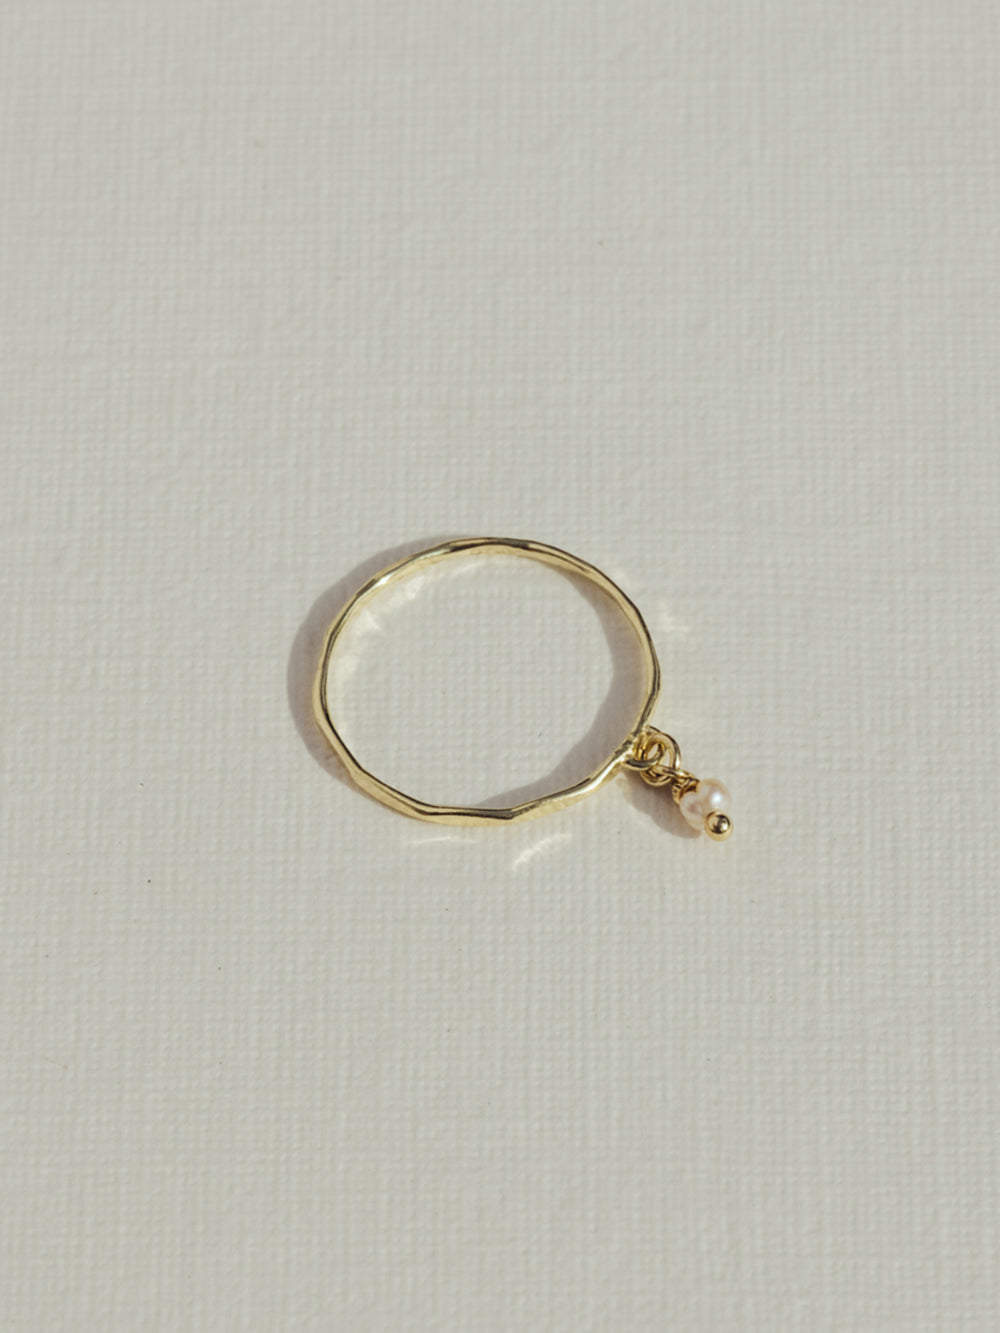 Birthstone ring | 14K Solid Gold